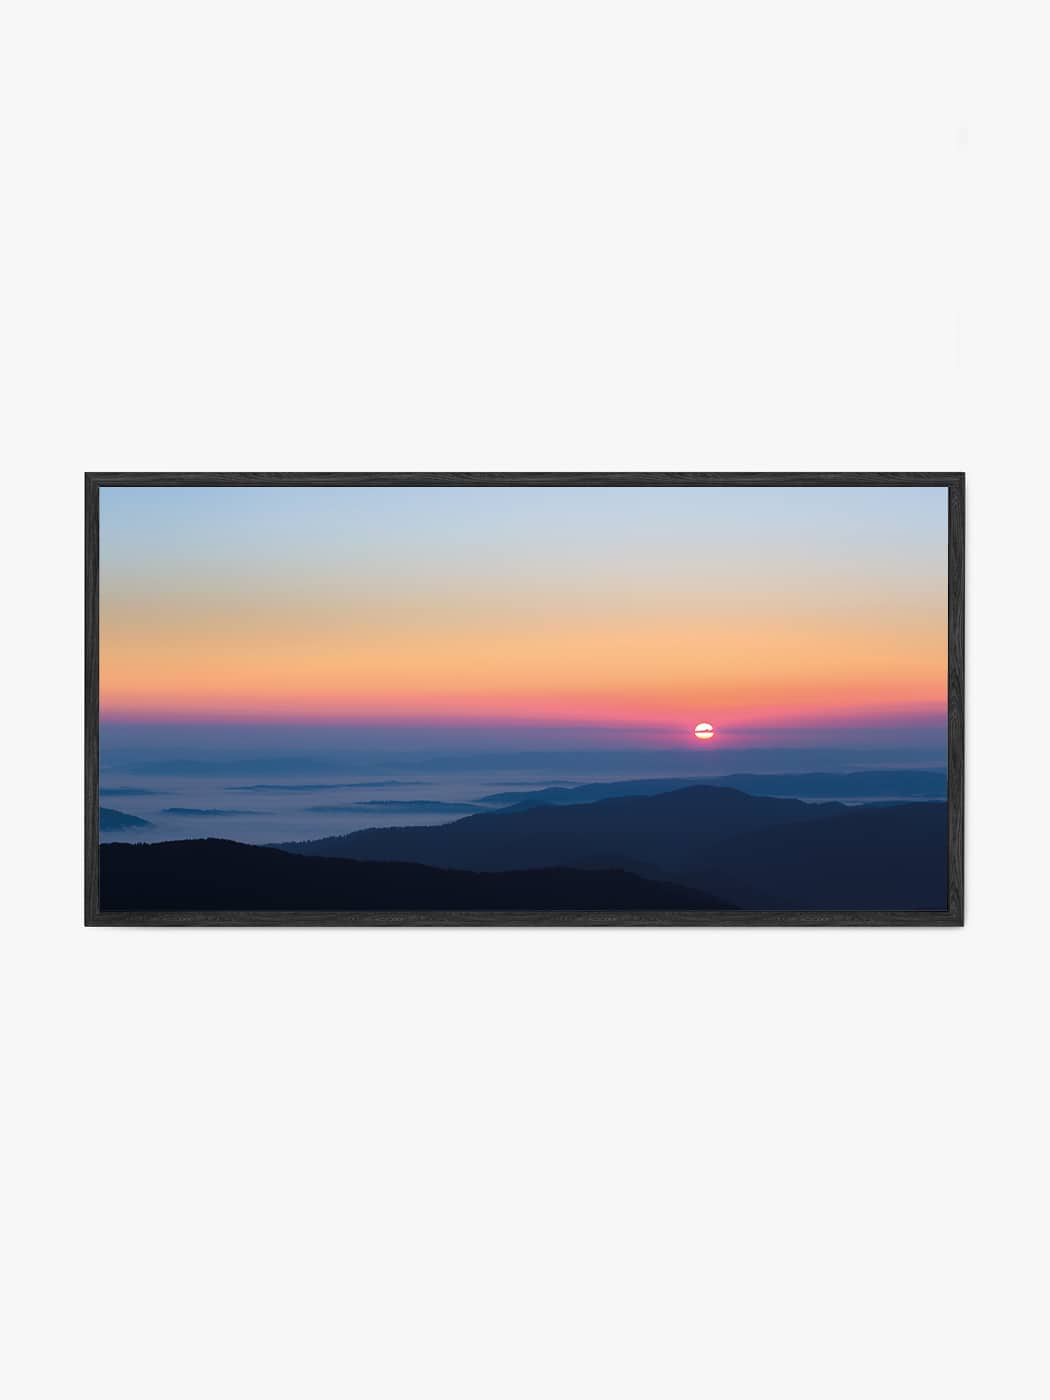 Obraz akustyczny ze zdjęcia - Panorama zachodu słońca nad dolinami górami - Łukasz Popielarczyk